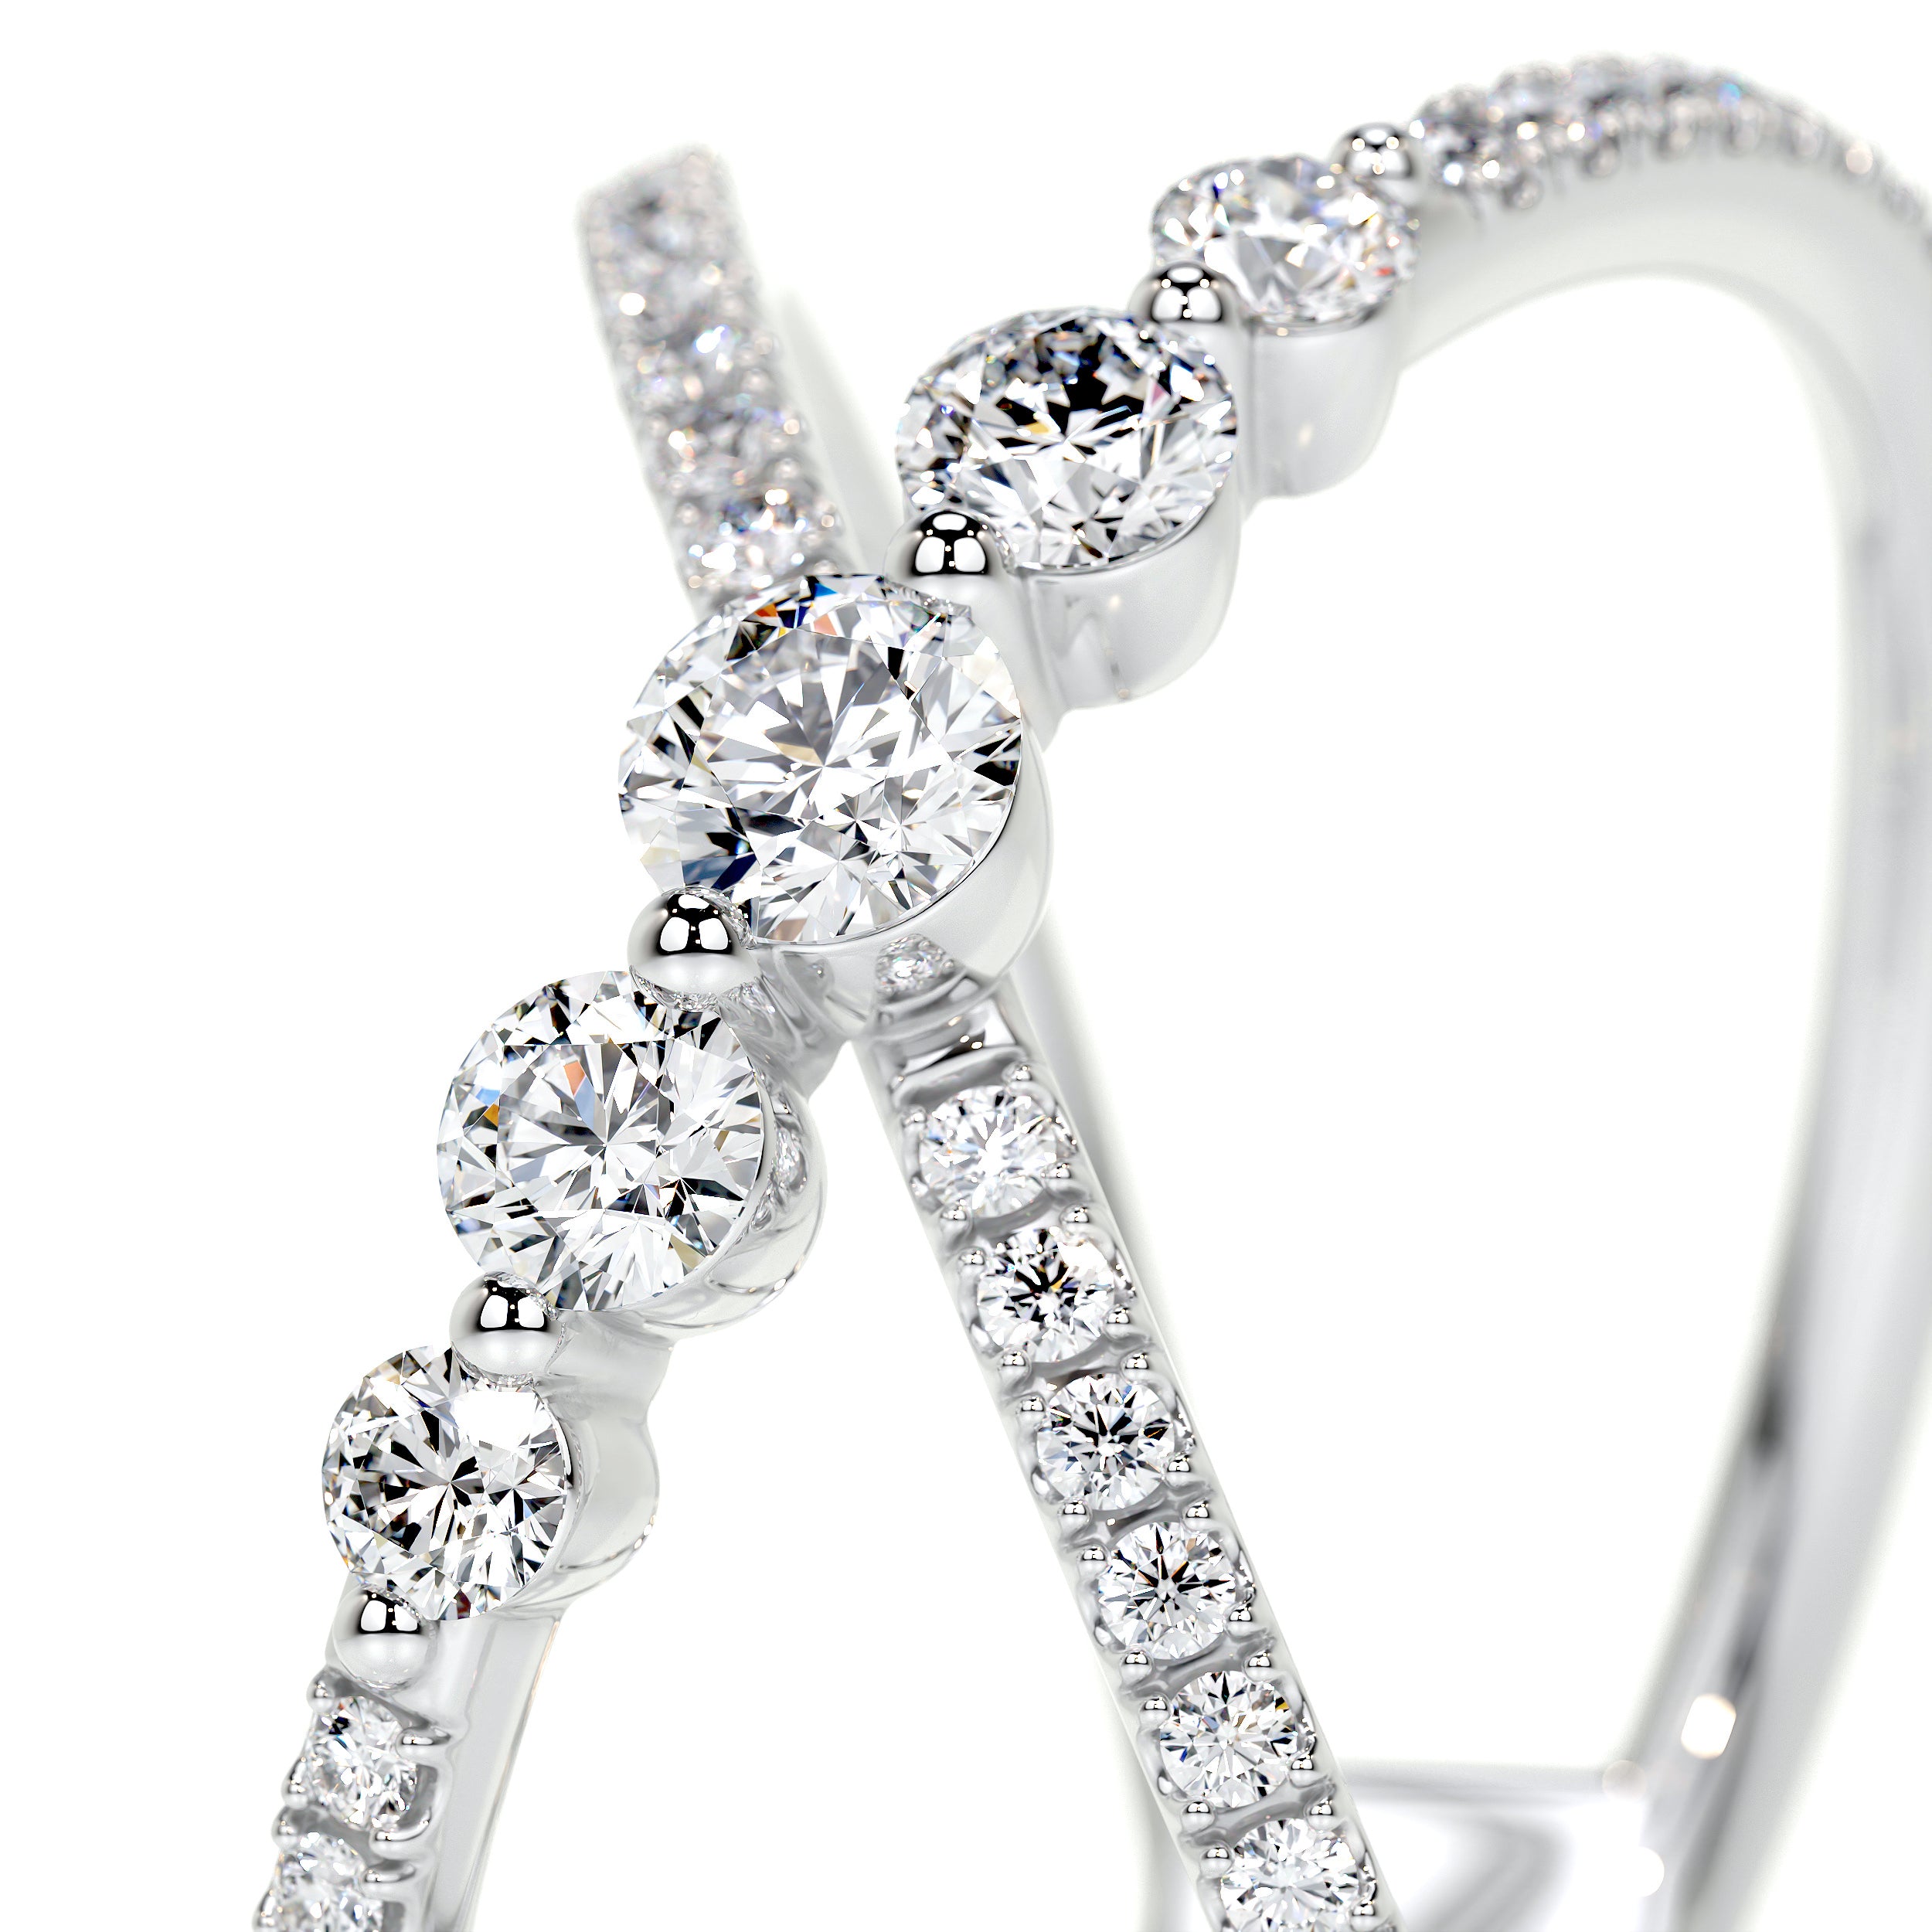 Iris Lab Grown Diamond Wedding Ring   (0.42 Carat) -18K White Gold